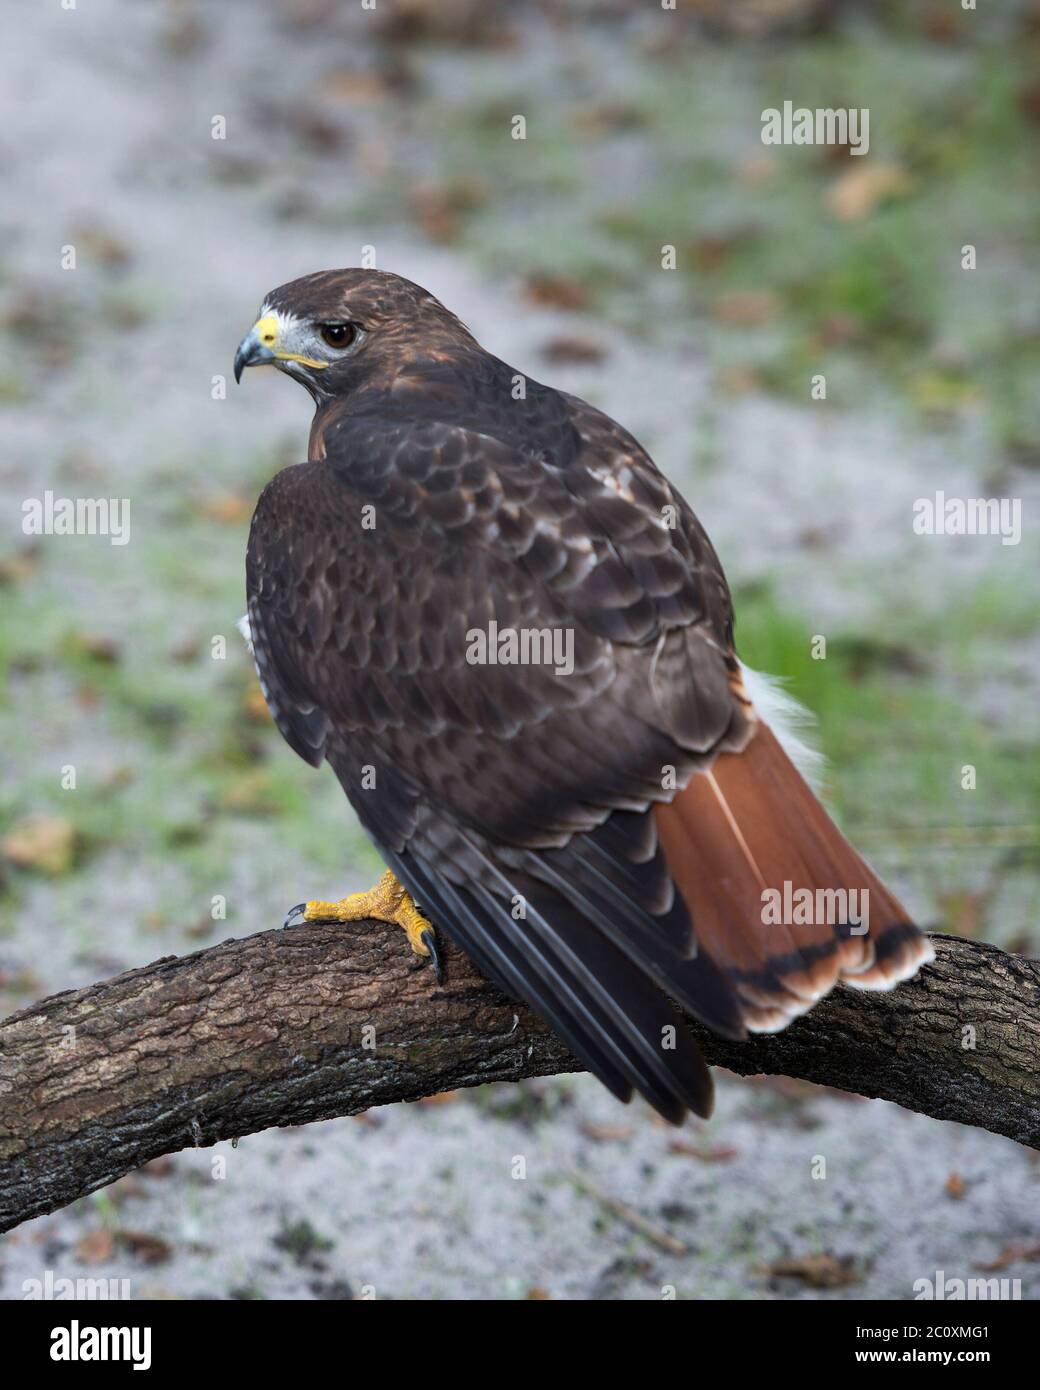 Hawk Vogel thront mit braunen Federn Gefieder, hinten roten Schwanz, Kopf, Auge, Schnabel, Füße, Gefieder mit einem verschwommenen Hintergrund in seiner Umgebung. Stockfoto